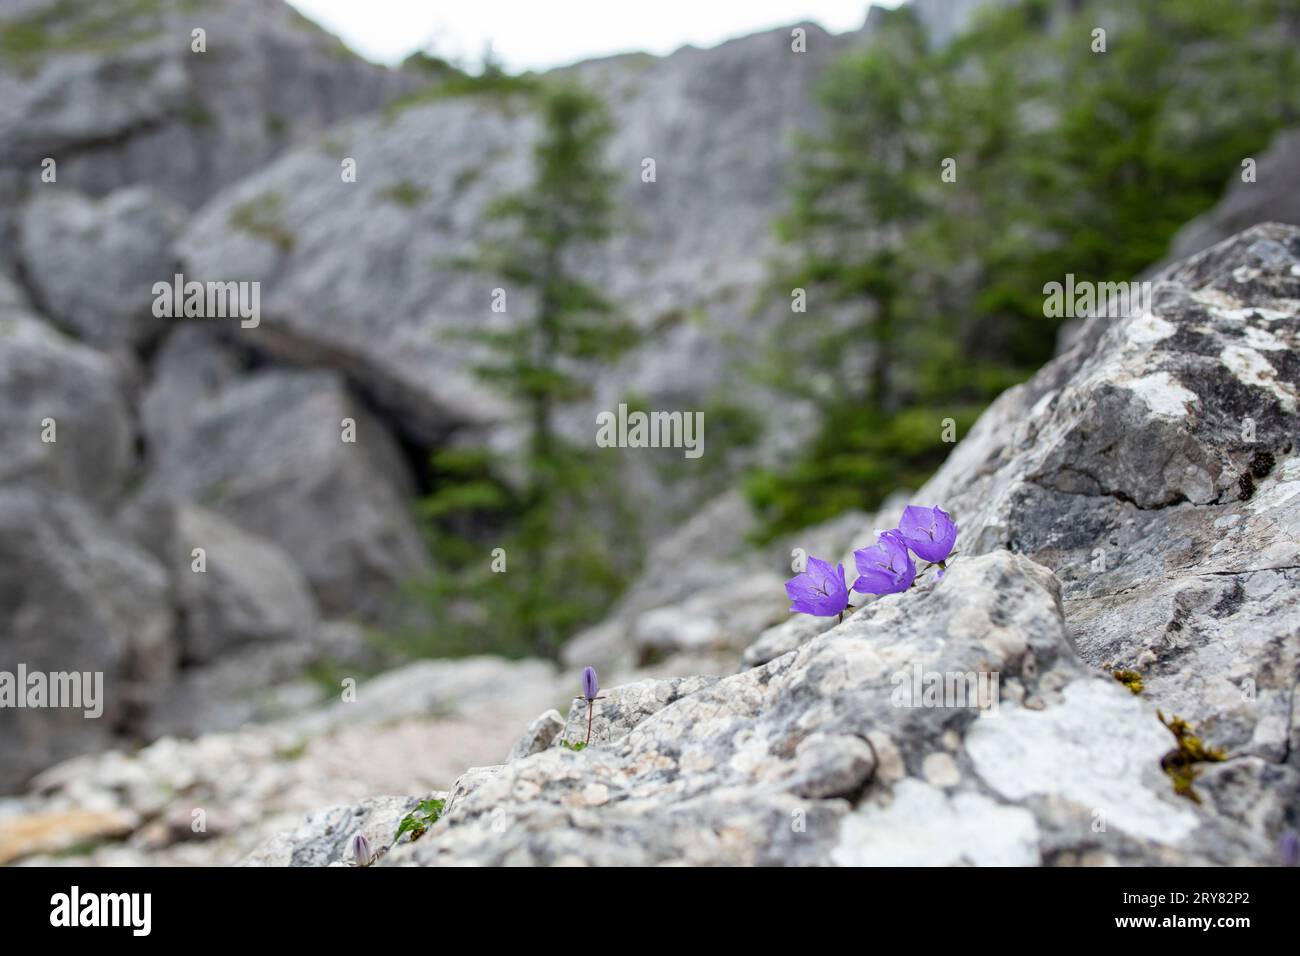 Fiori di Campanula rotundifolia noti come piccoli bluebell, che crescono su un masso roccioso nelle montagne di Rarau in Romania. primo piano della messa a fuoco morbida Foto Stock